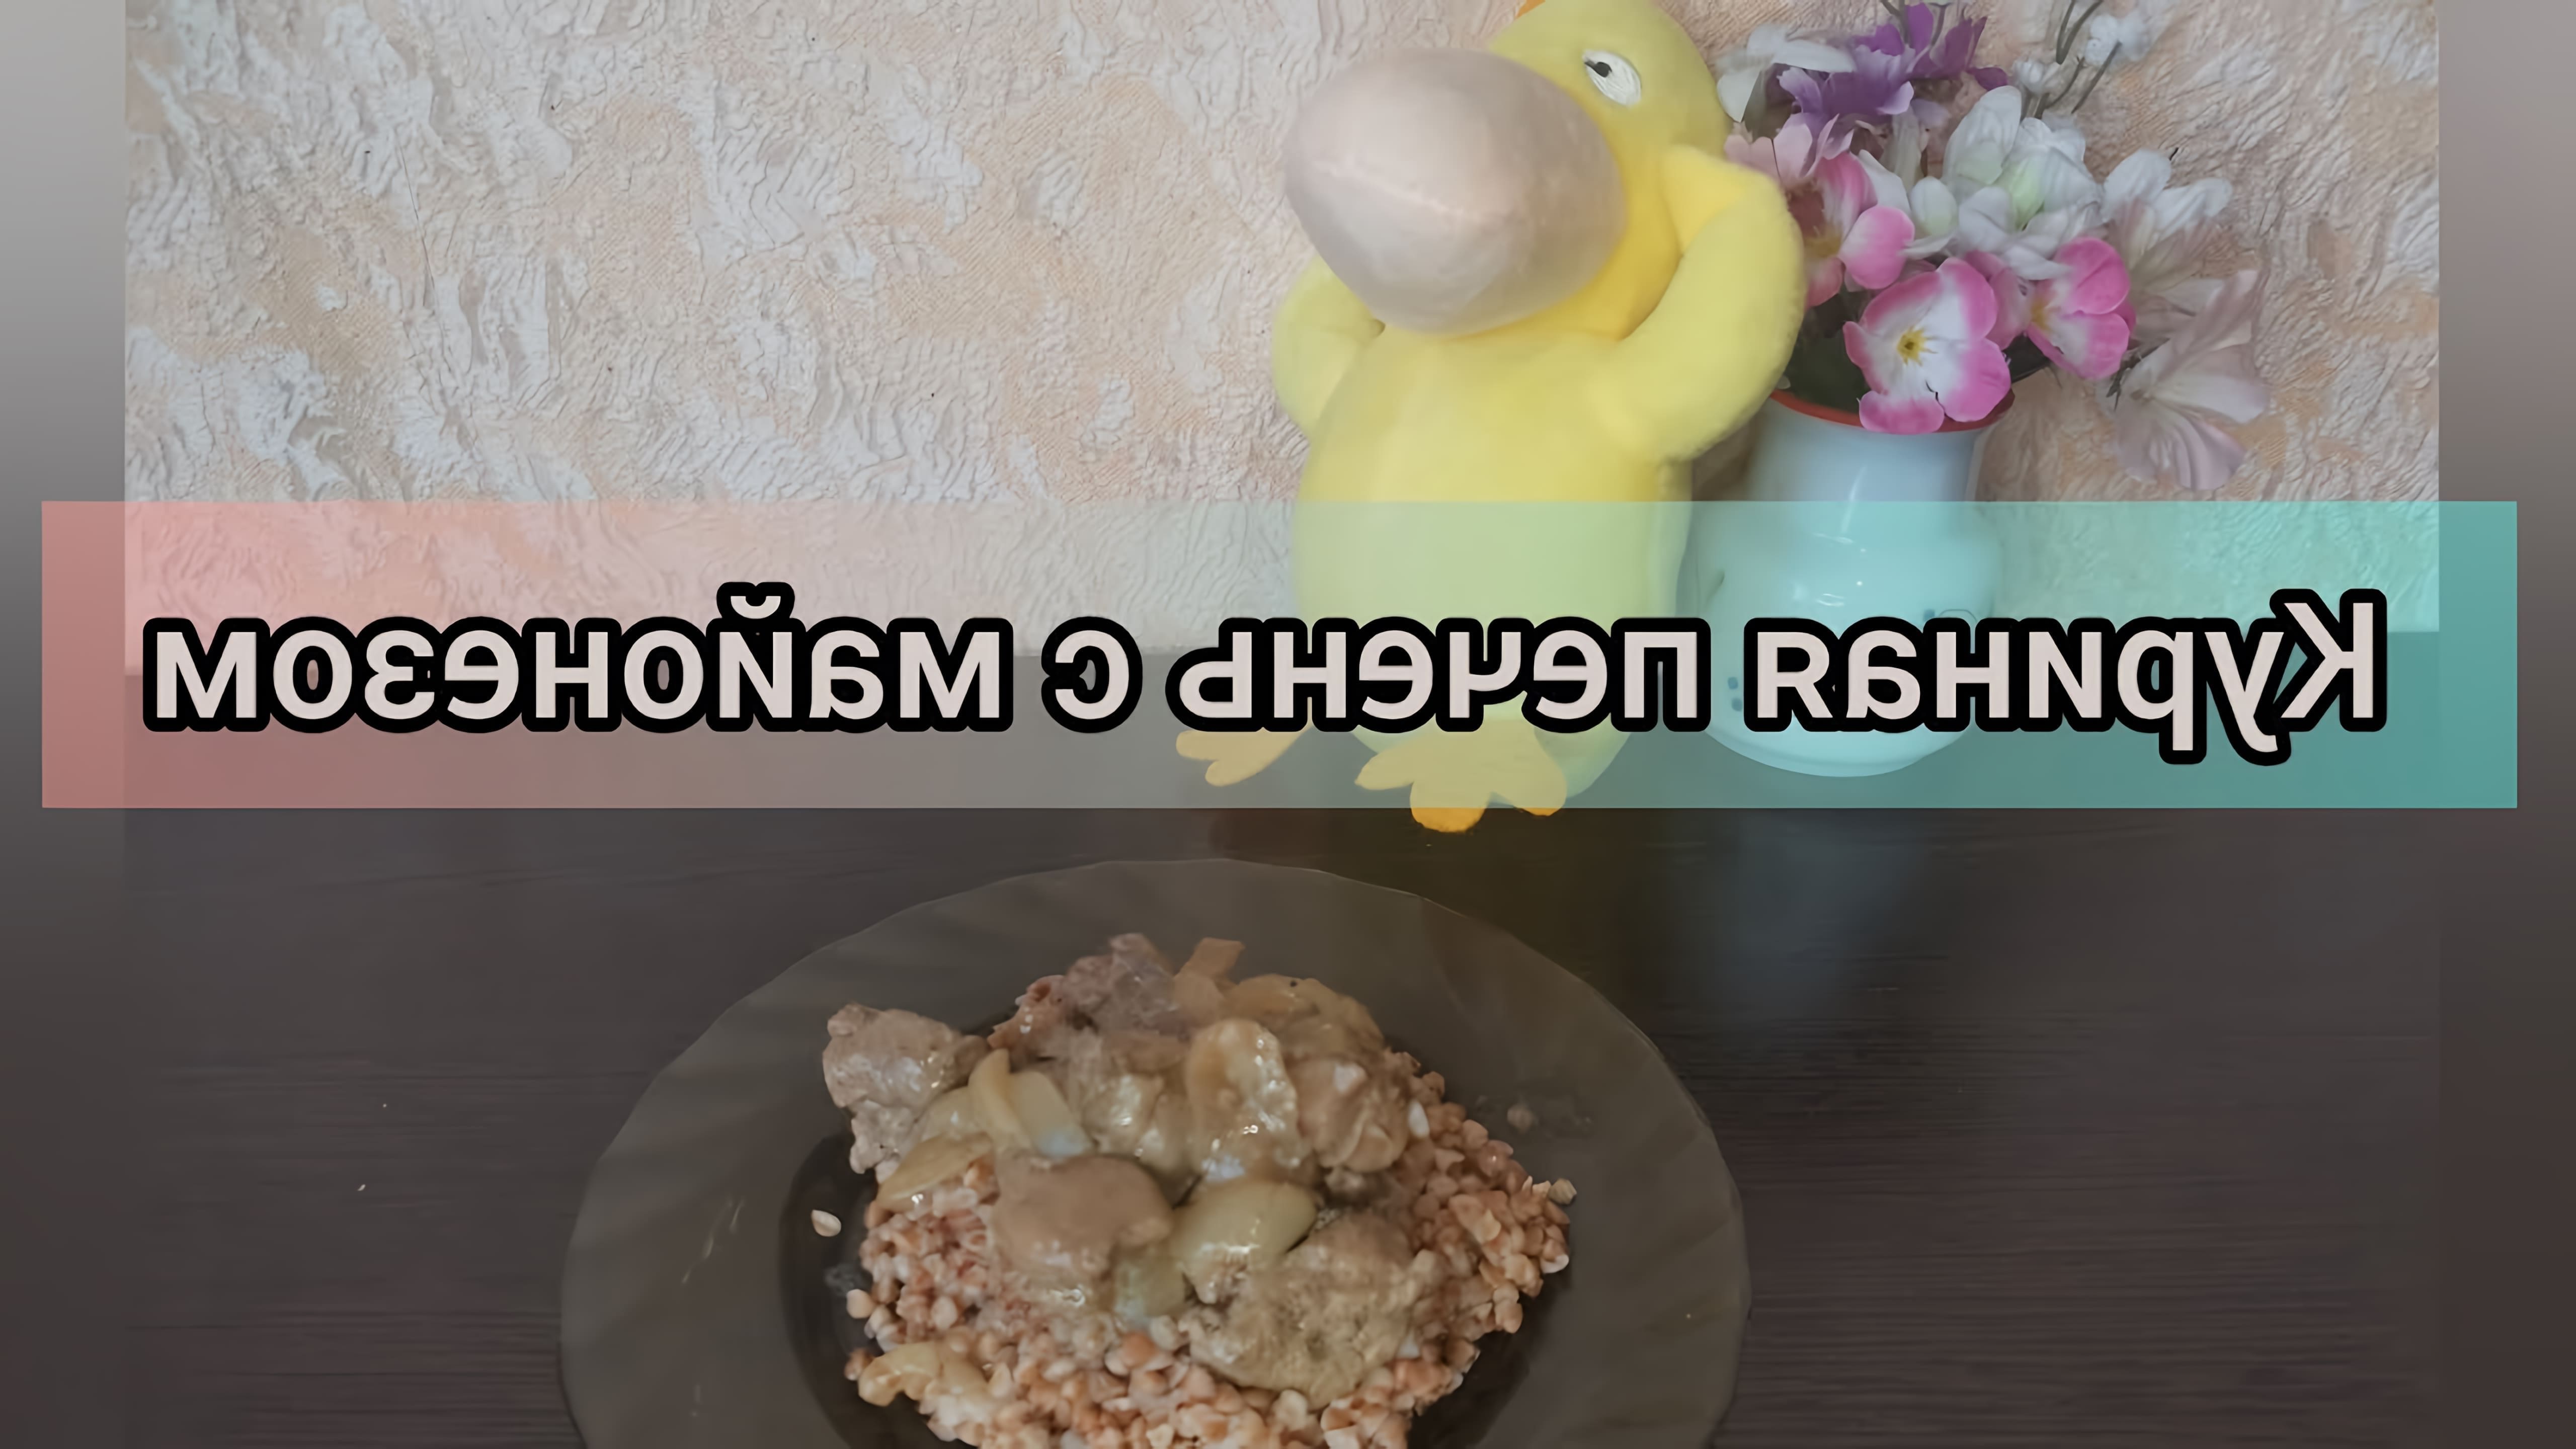 В этом видео демонстрируется рецепт приготовления нежной куриной печени на сковородке с майонезом